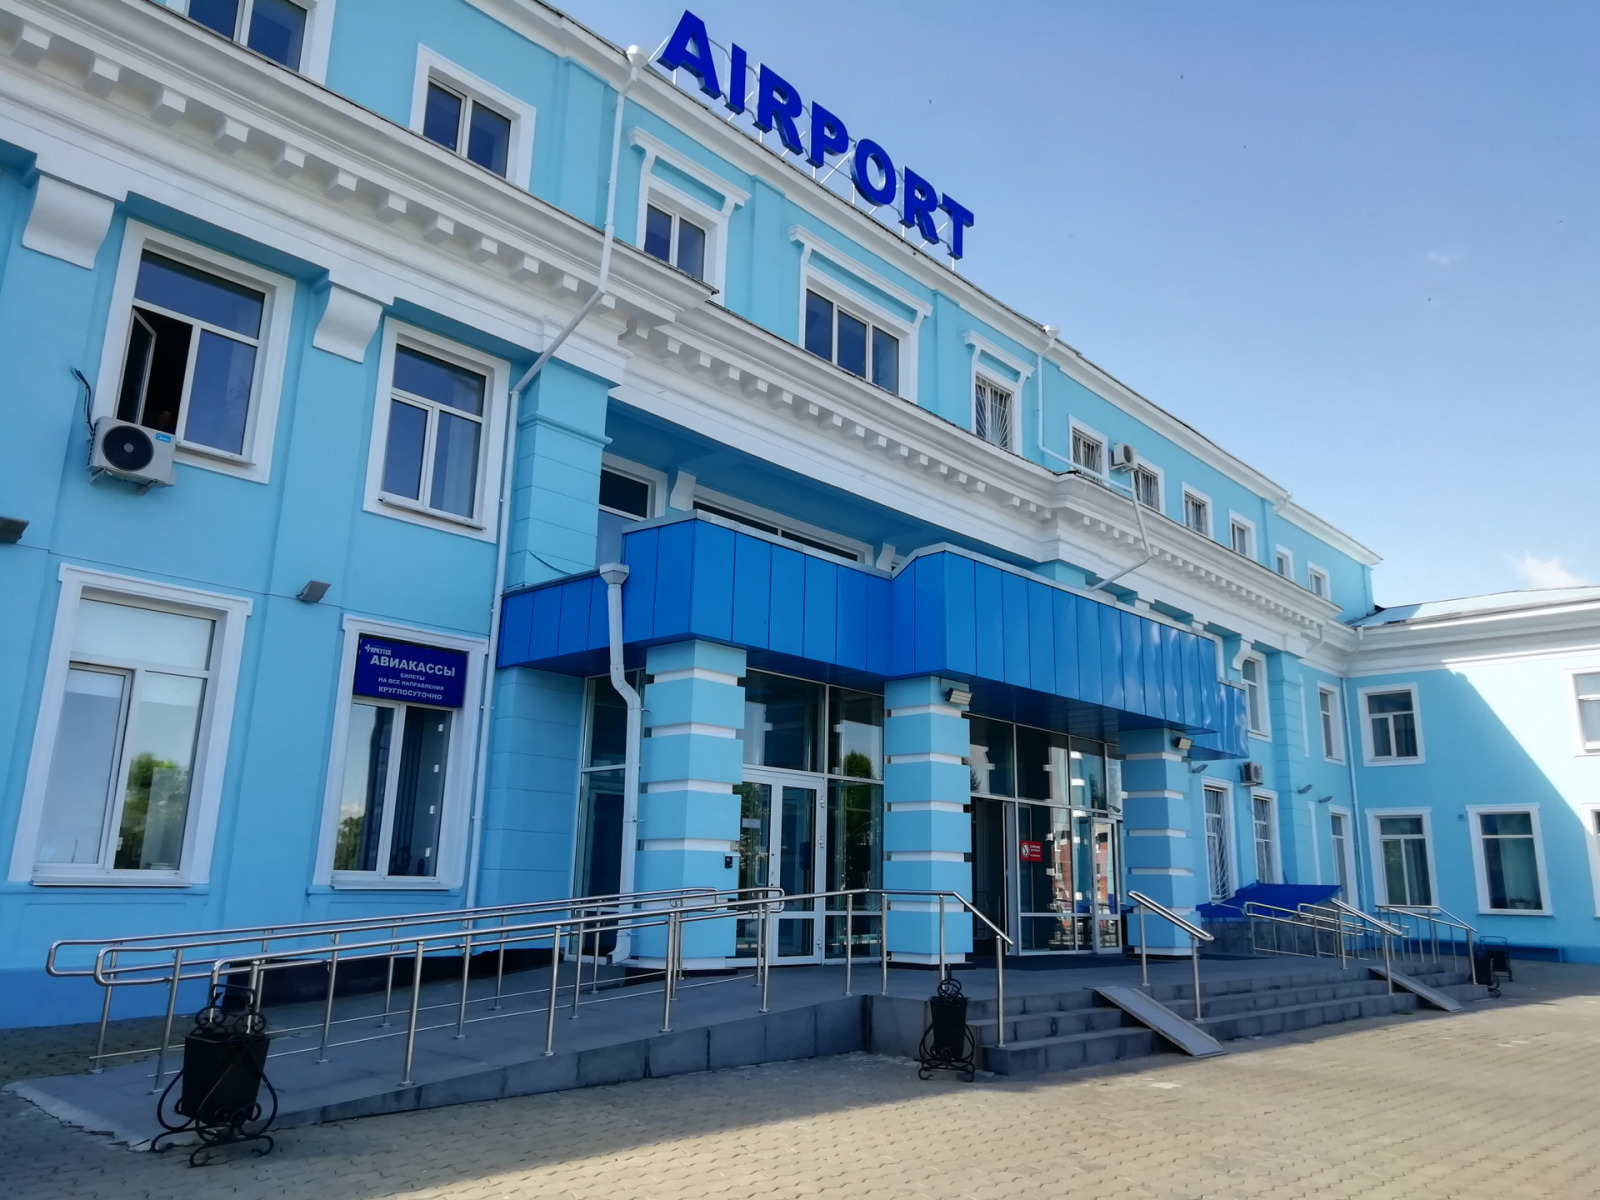 Международный аэропорт Иркутска, г. Иркутск, 2018 г.